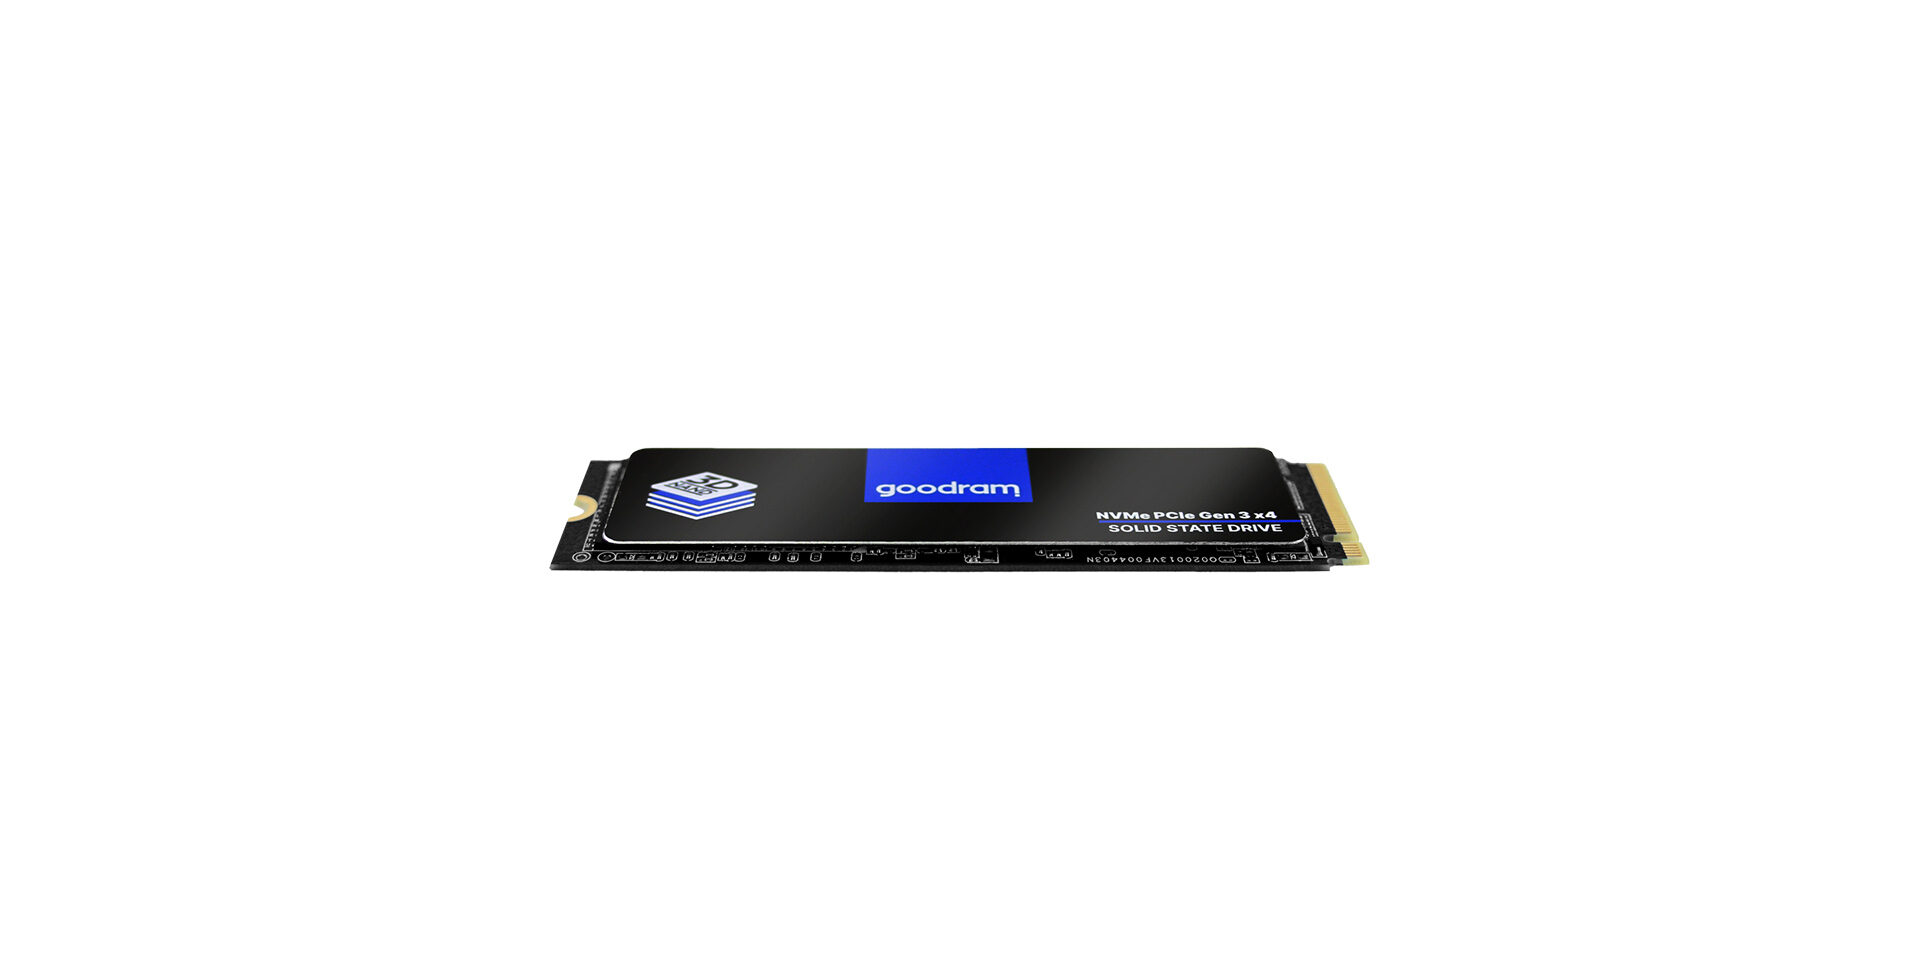 Goodram PX500 SSD, PCIe 3x4, 512 GB, M.2 2280, NVMe, RETAIL GEN2